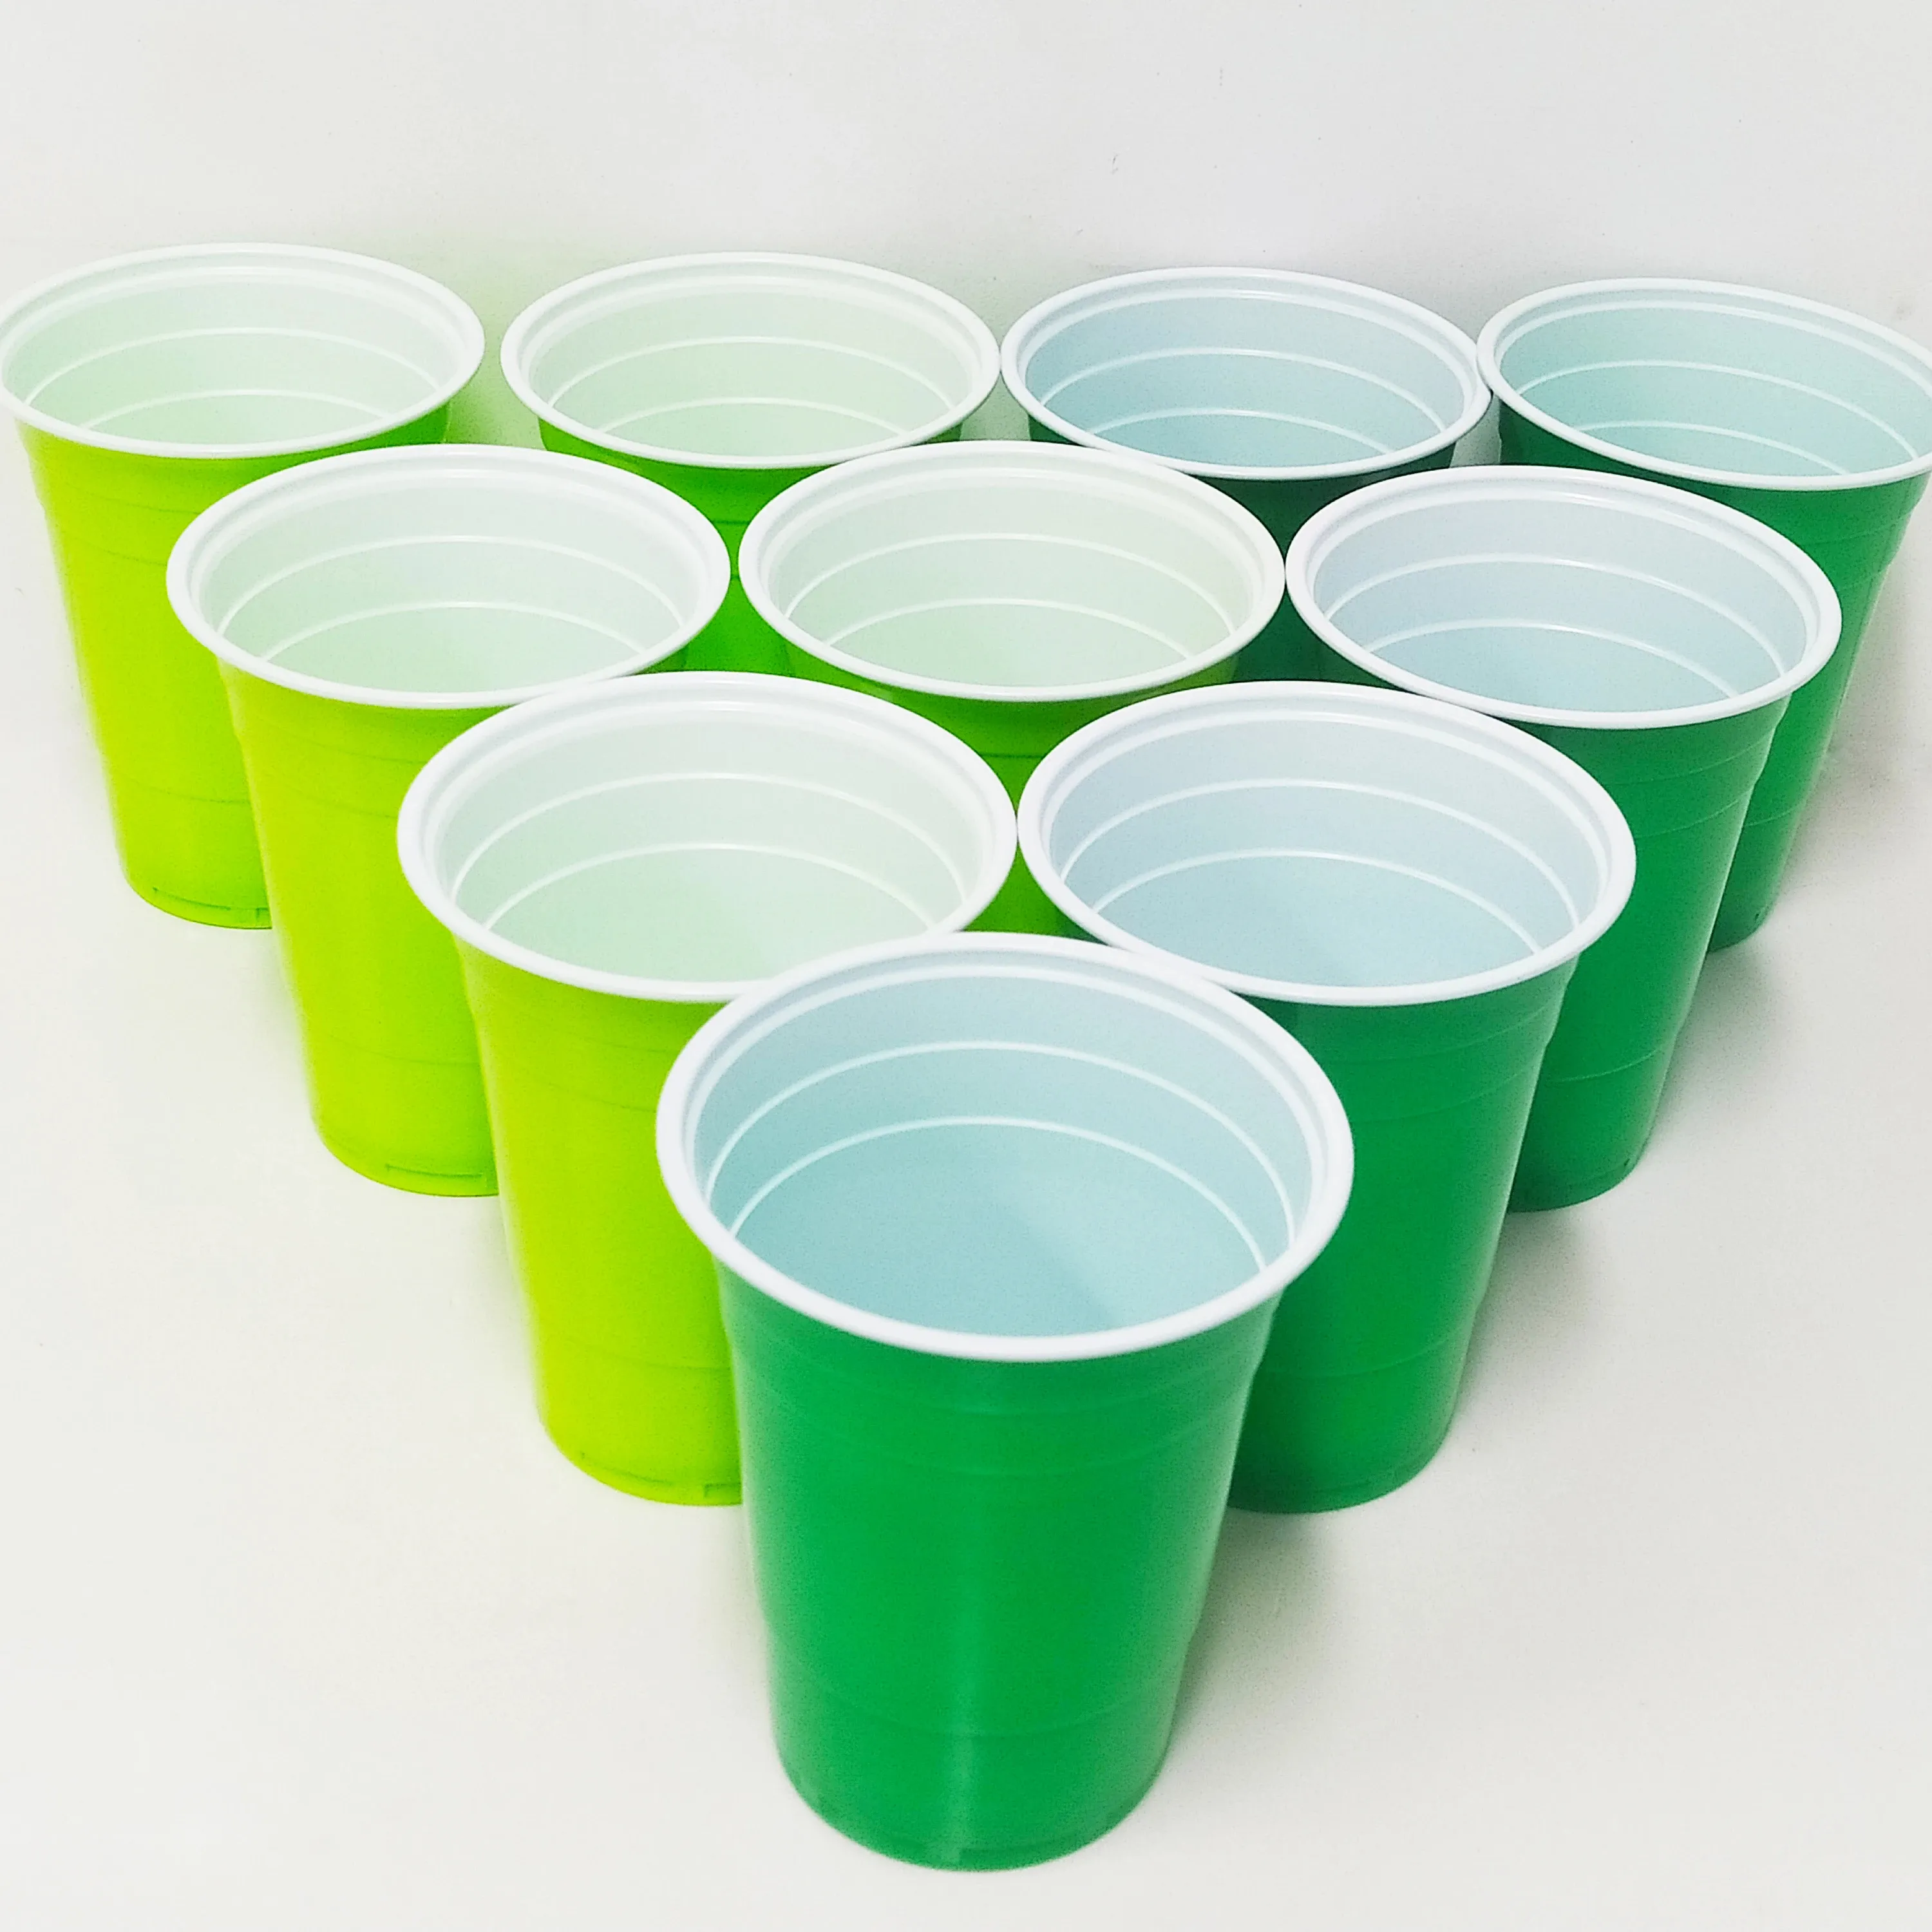 ปาร์ตี้ดื่มพลาสติกสีเขียว PS ถ้วยถ้วยเบียร์ปองแบบใช้แล้วทิ้ง